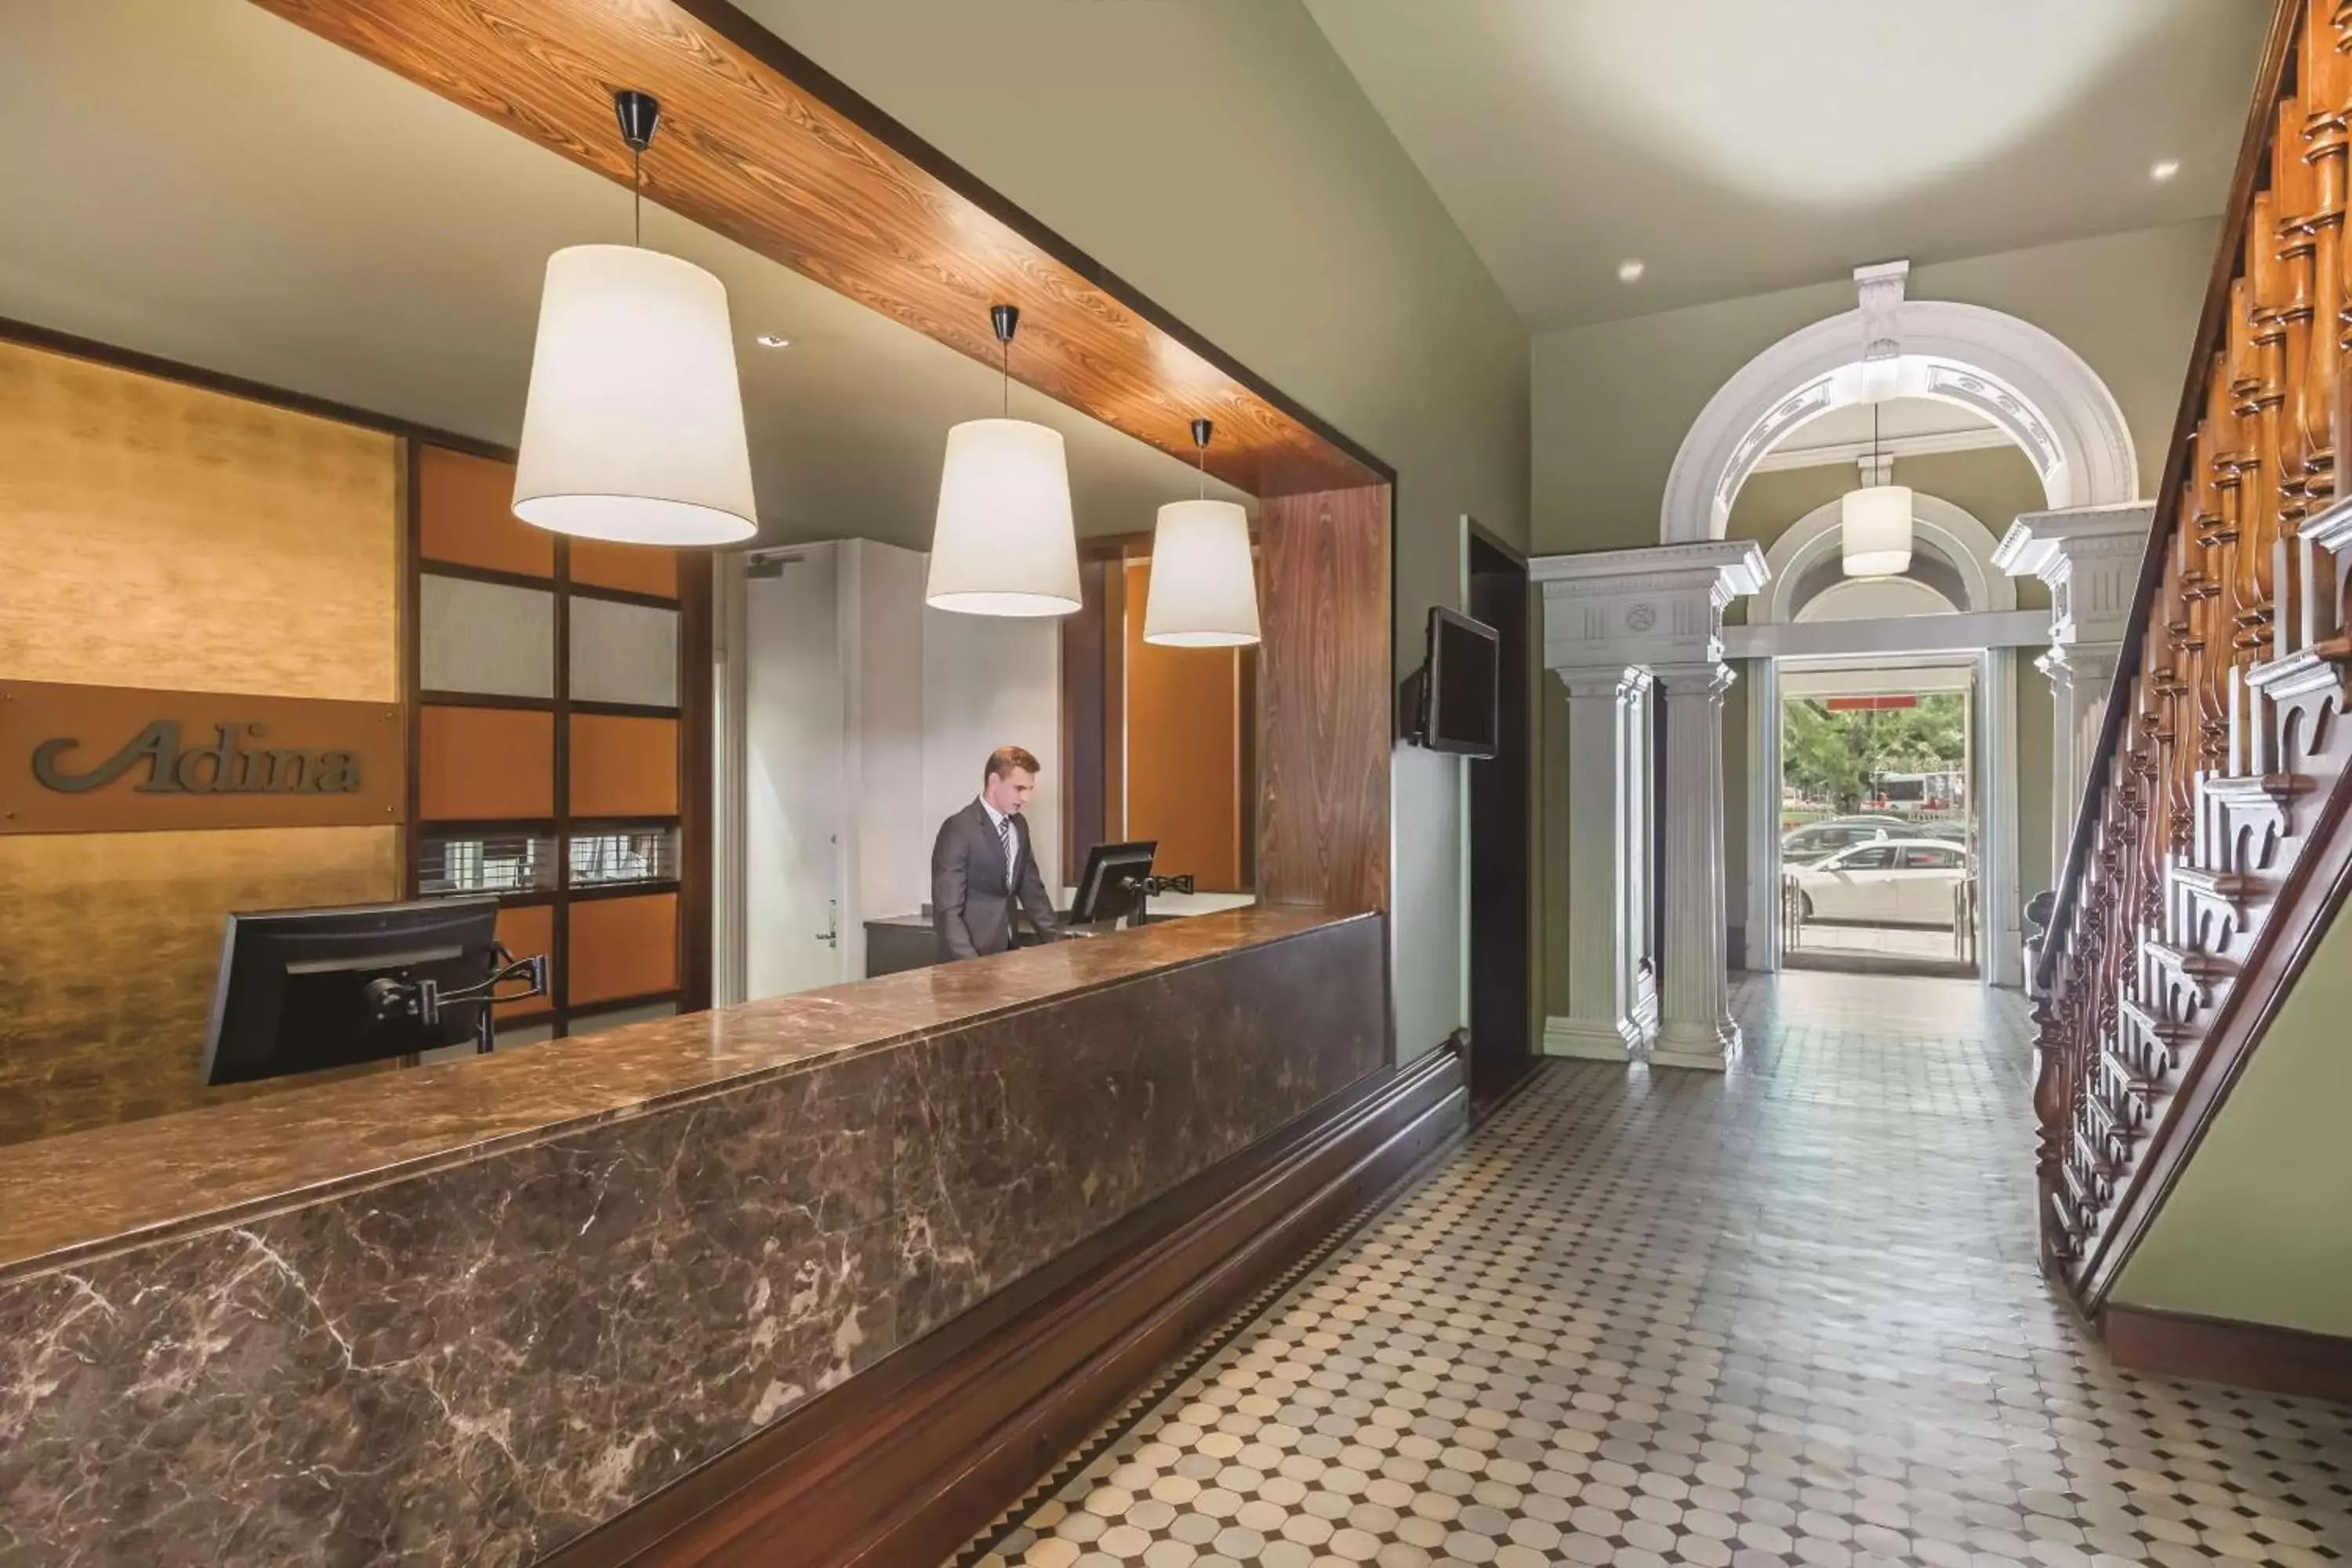 Lobby or reception, Lobby/Reception in Adina Apartment Hotel Adelaide Treasury